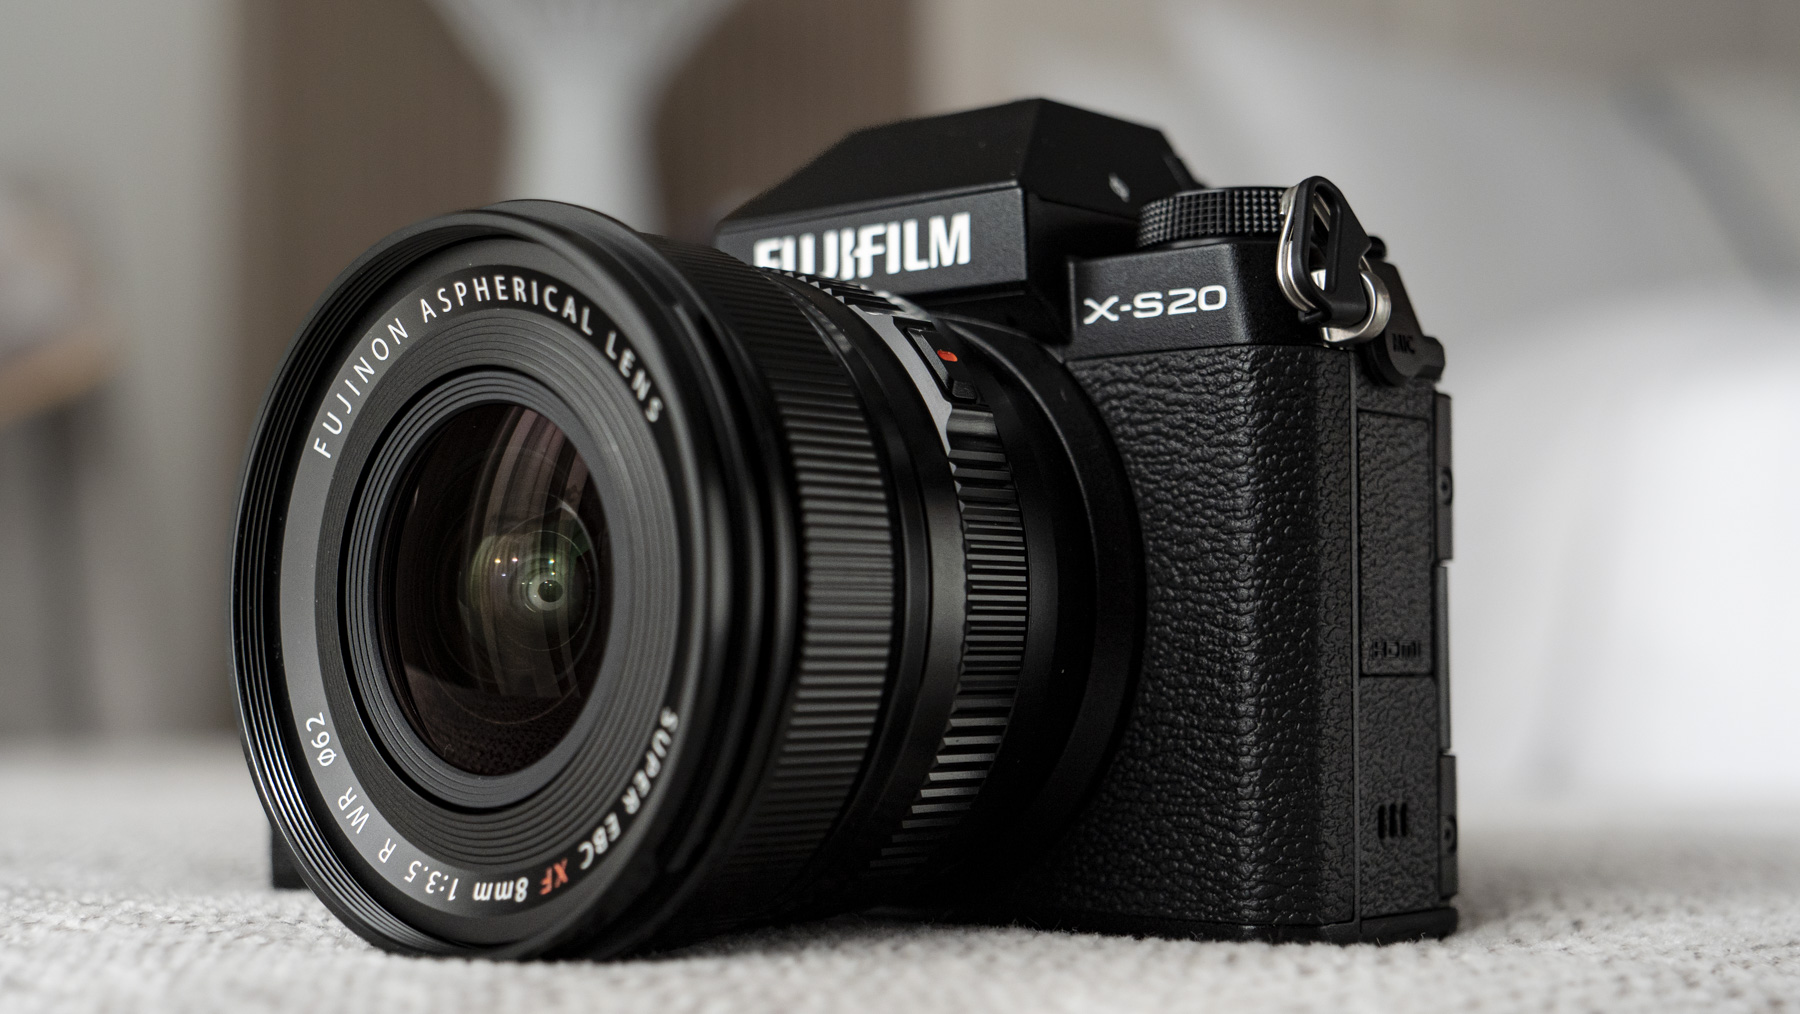 Frente da câmera Fujifilm X-S20 com lente F3.5 de 8 mm acoplada